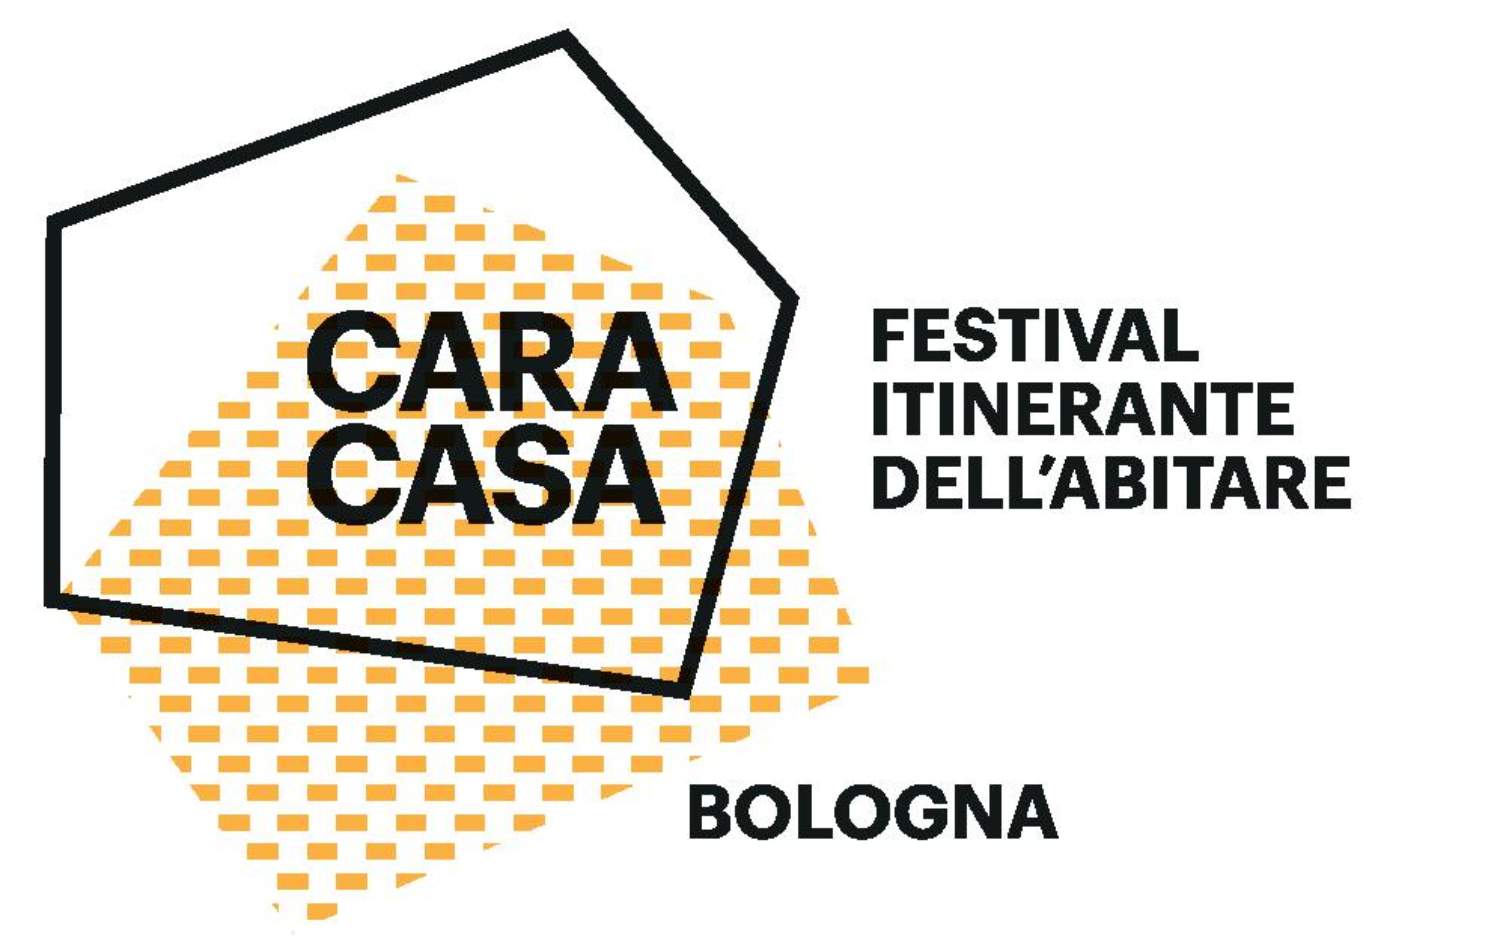 Cara Casa Festival, dal 15 al 30 aprile a Milano, Bologna, Genova e Venezia